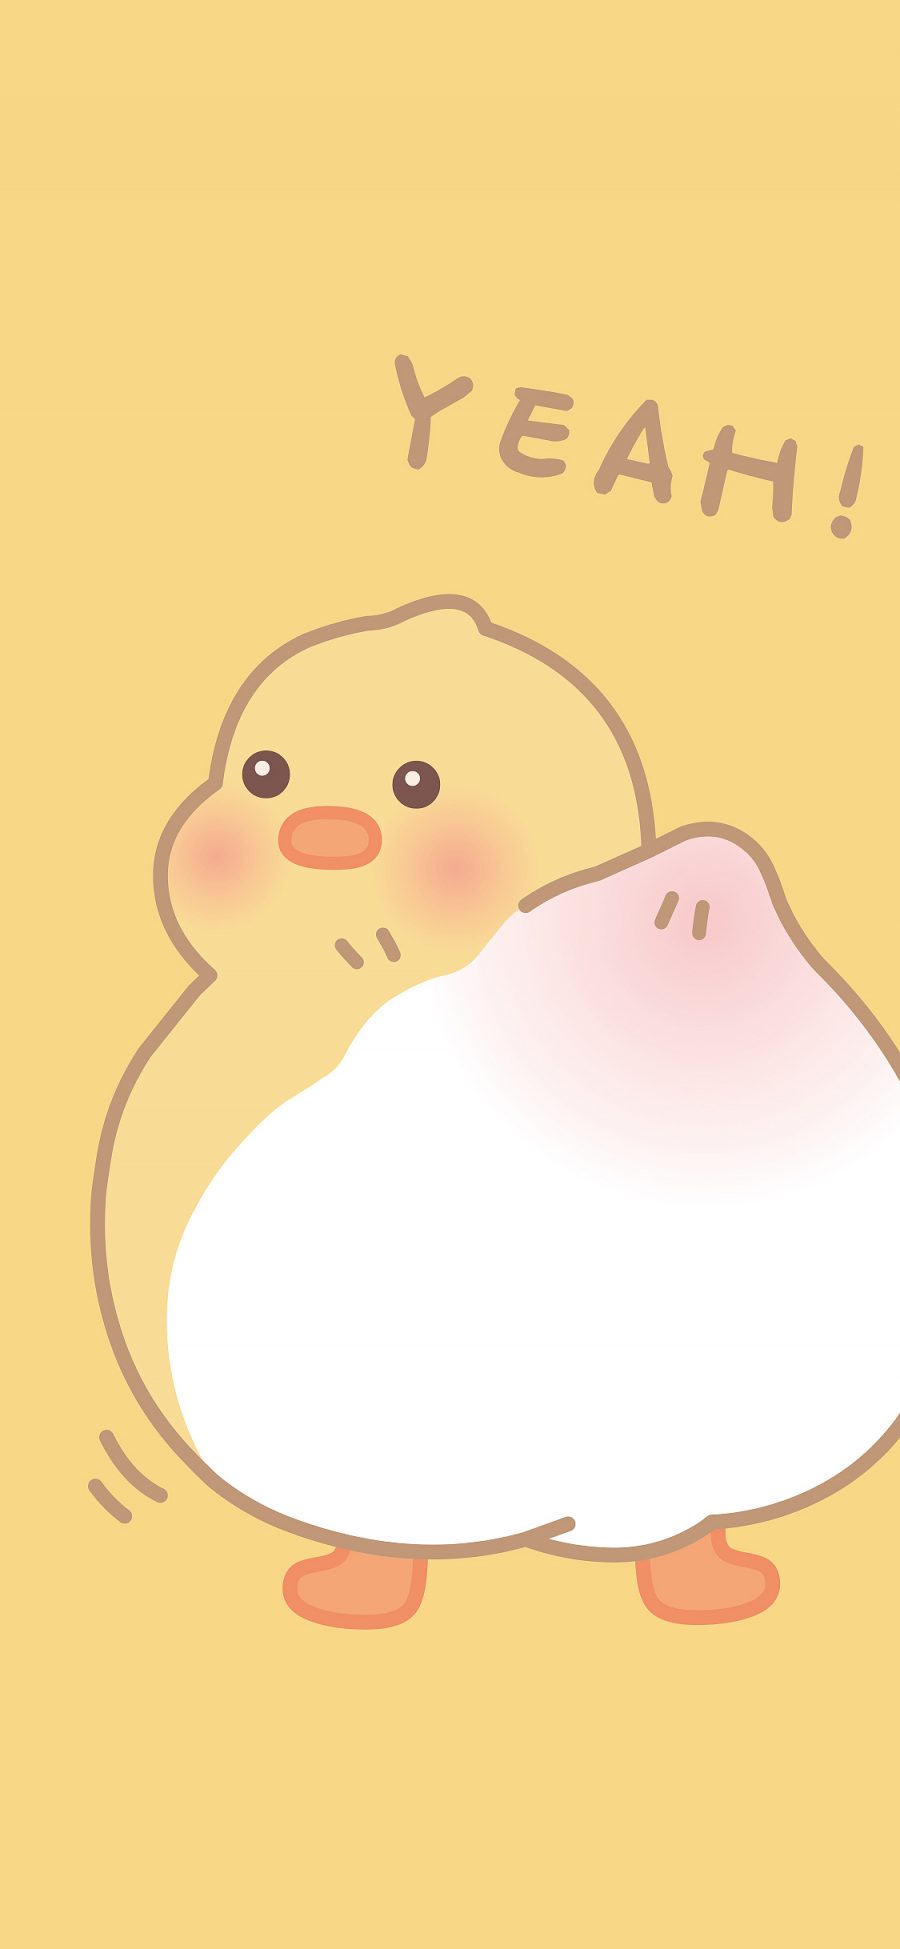 [2436×1125]小鸡 可爱 黄 yeah 苹果手机动漫壁纸图片